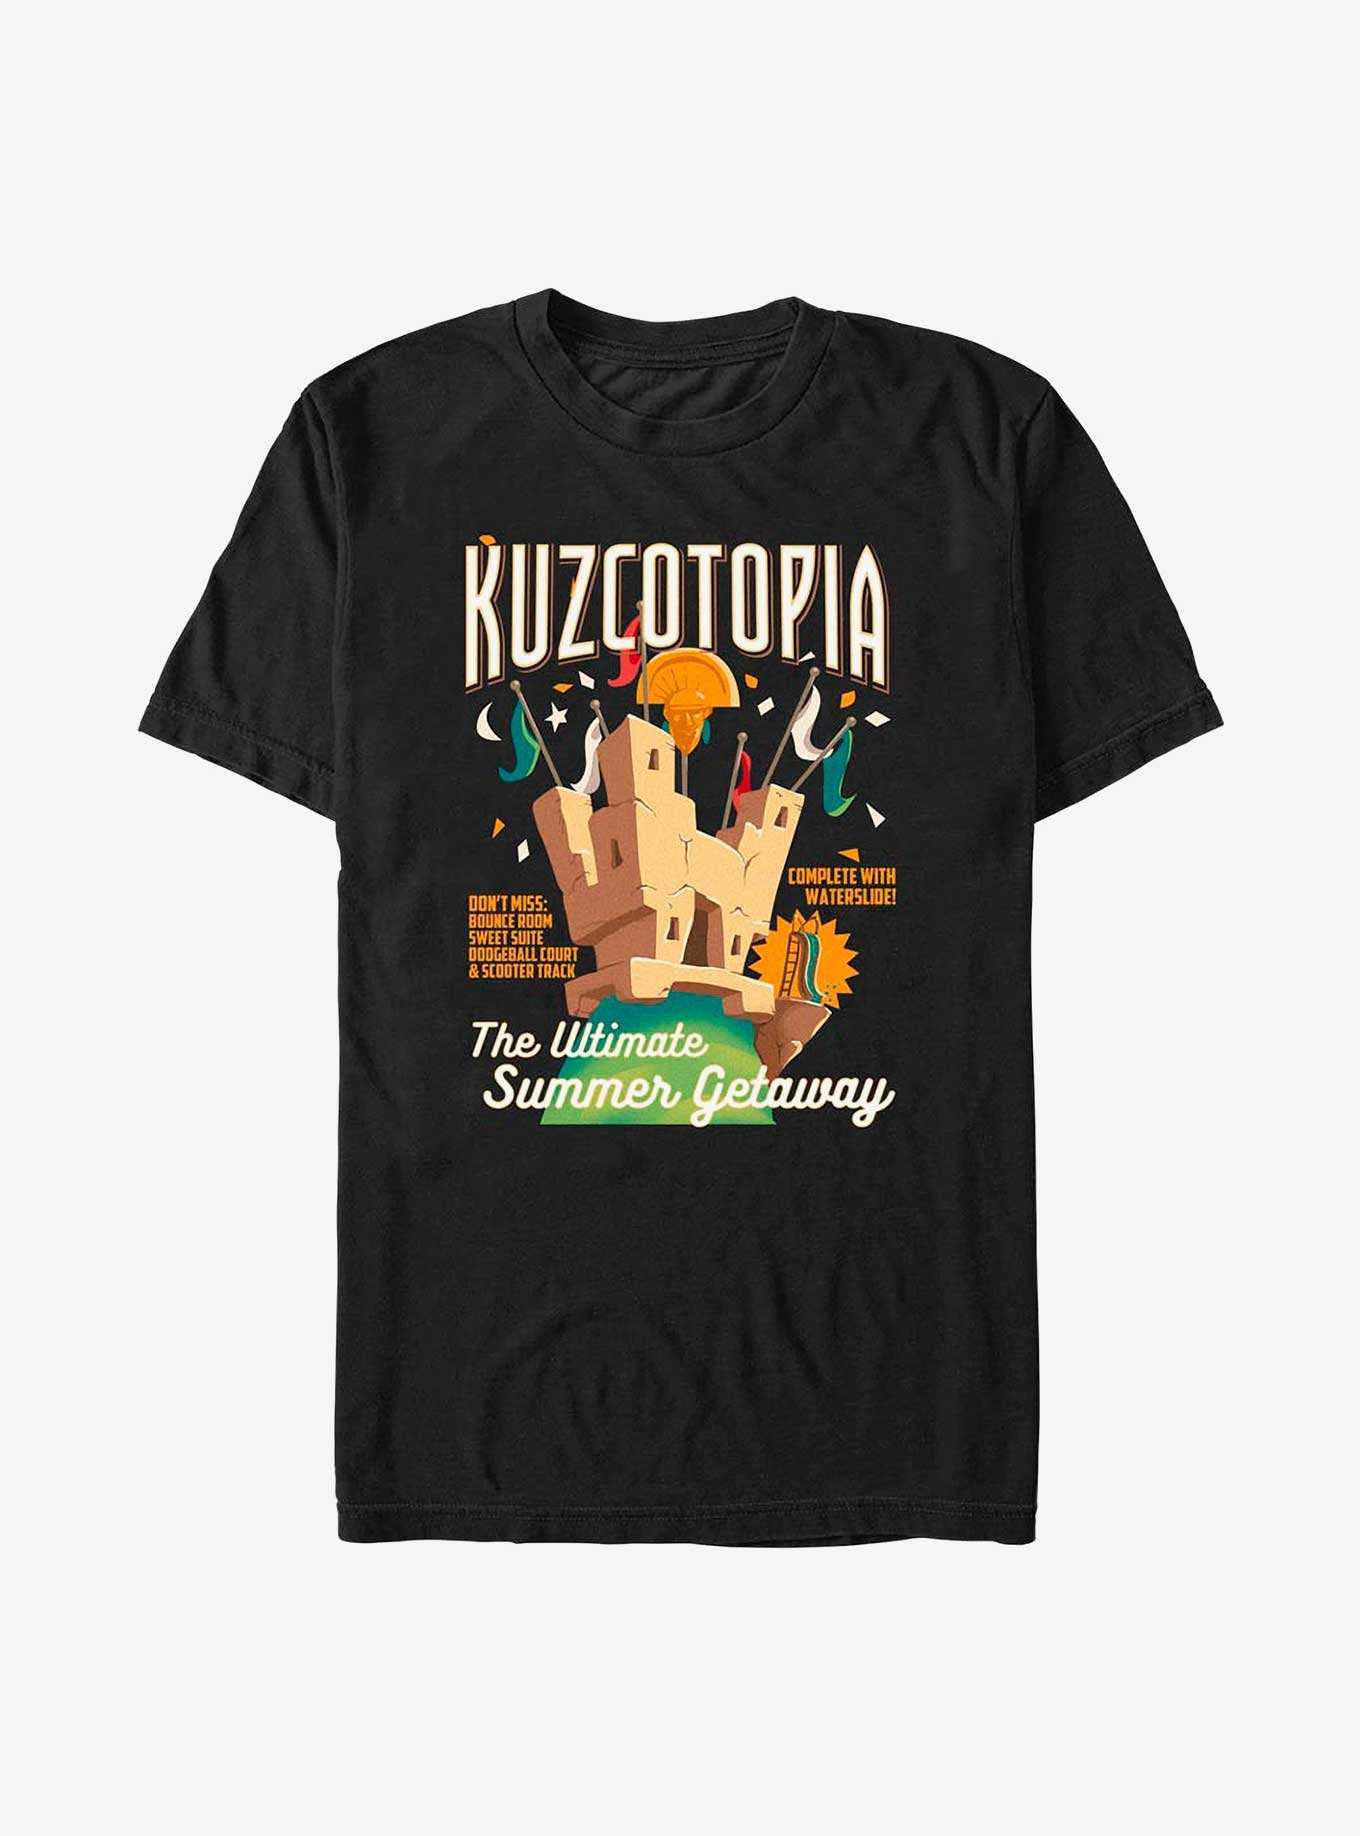 Disney The Emperor's New Groove Kuzcotopia Ad T-Shirt, , hi-res